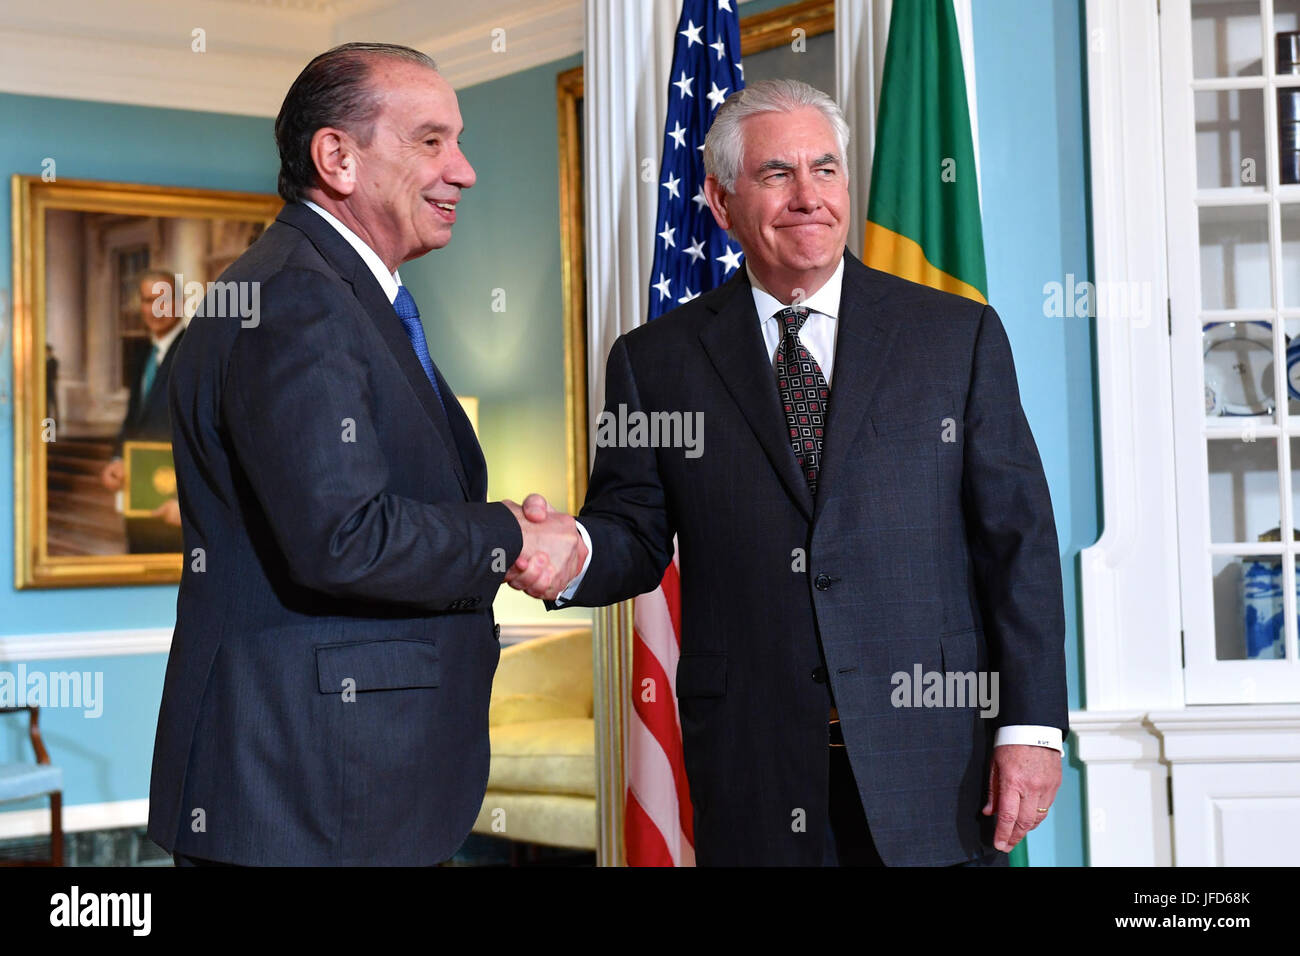 La secrétaire d'État des États-Unis, Rex Tillerson et Ministre des affaires étrangères brésilien Aloysio Nunes FERREIRA posent pour une photo avant leur réunion bilatérale au département d'État des États-Unis à Washington, D.C., le 2 juin 2017. Banque D'Images